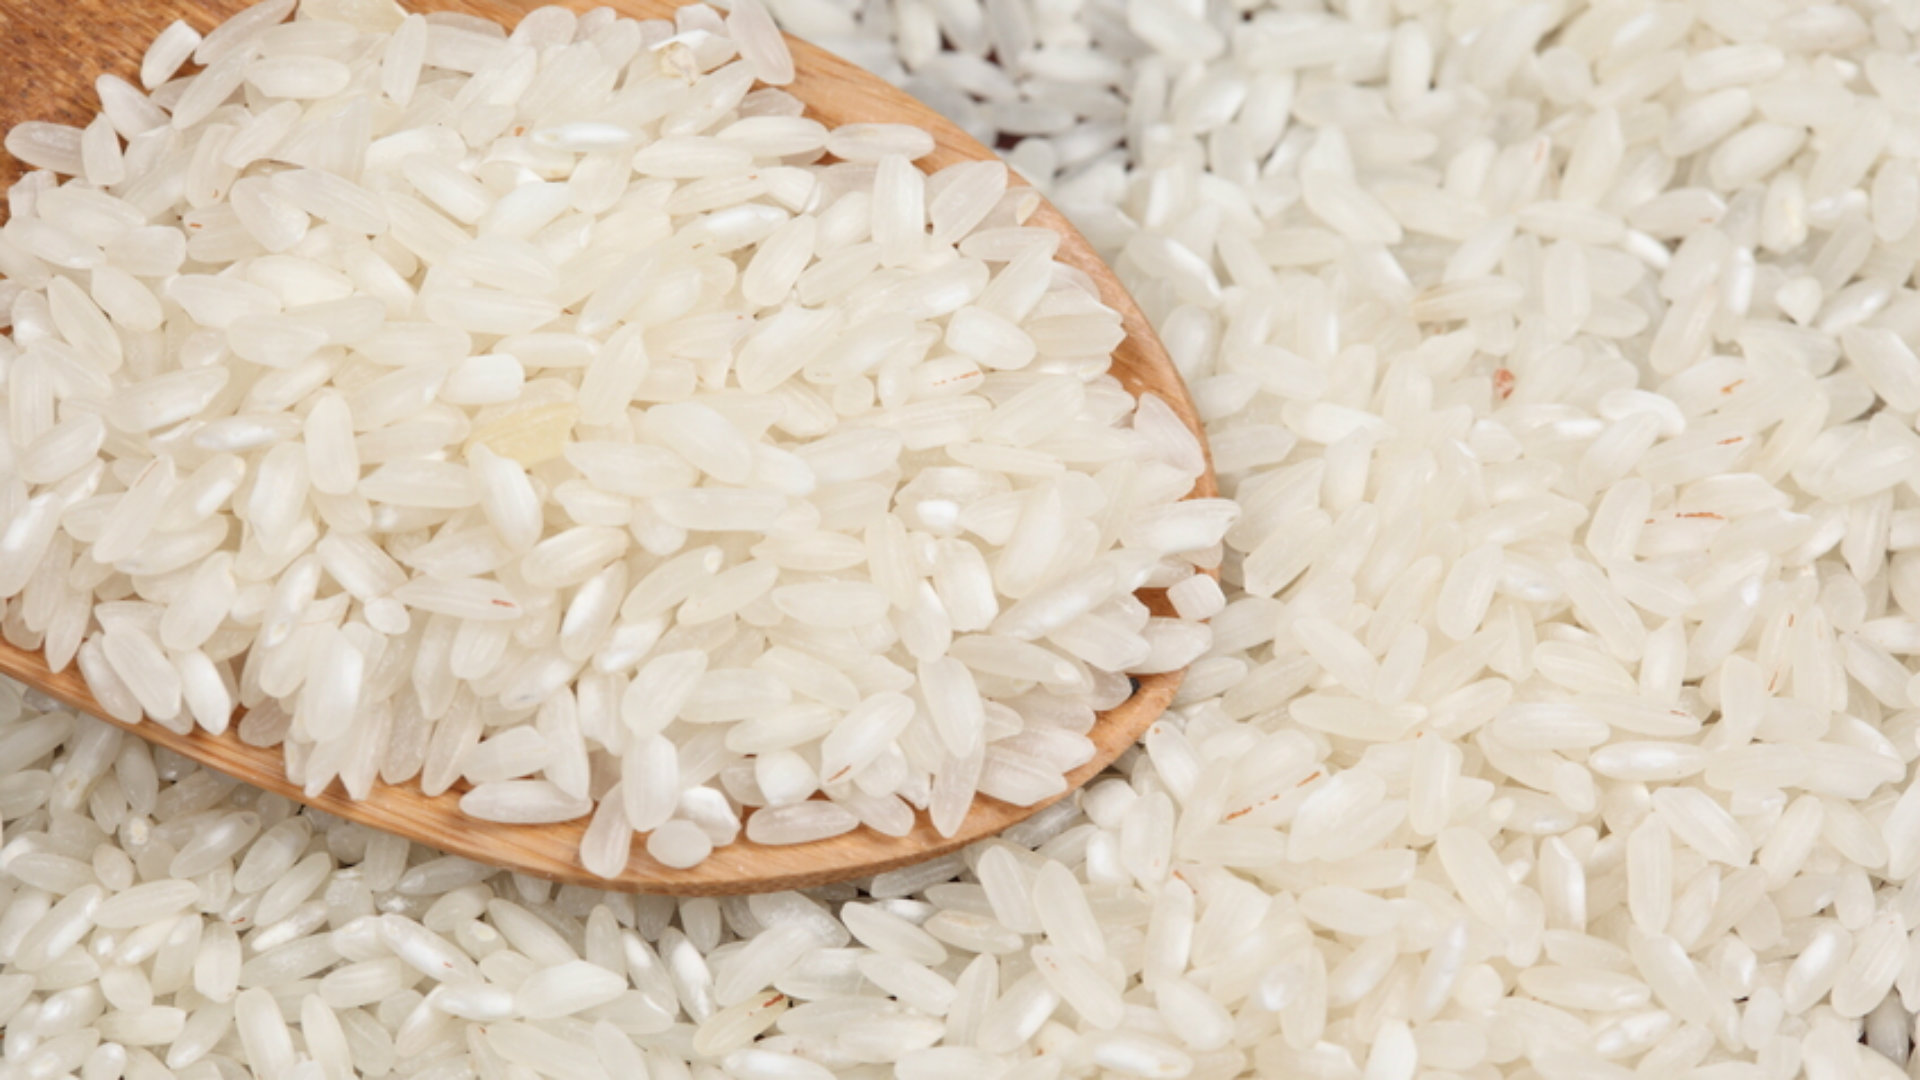 Asociación de Consumidores y productores de arroz discutirán esta semana sobre fijación de precios